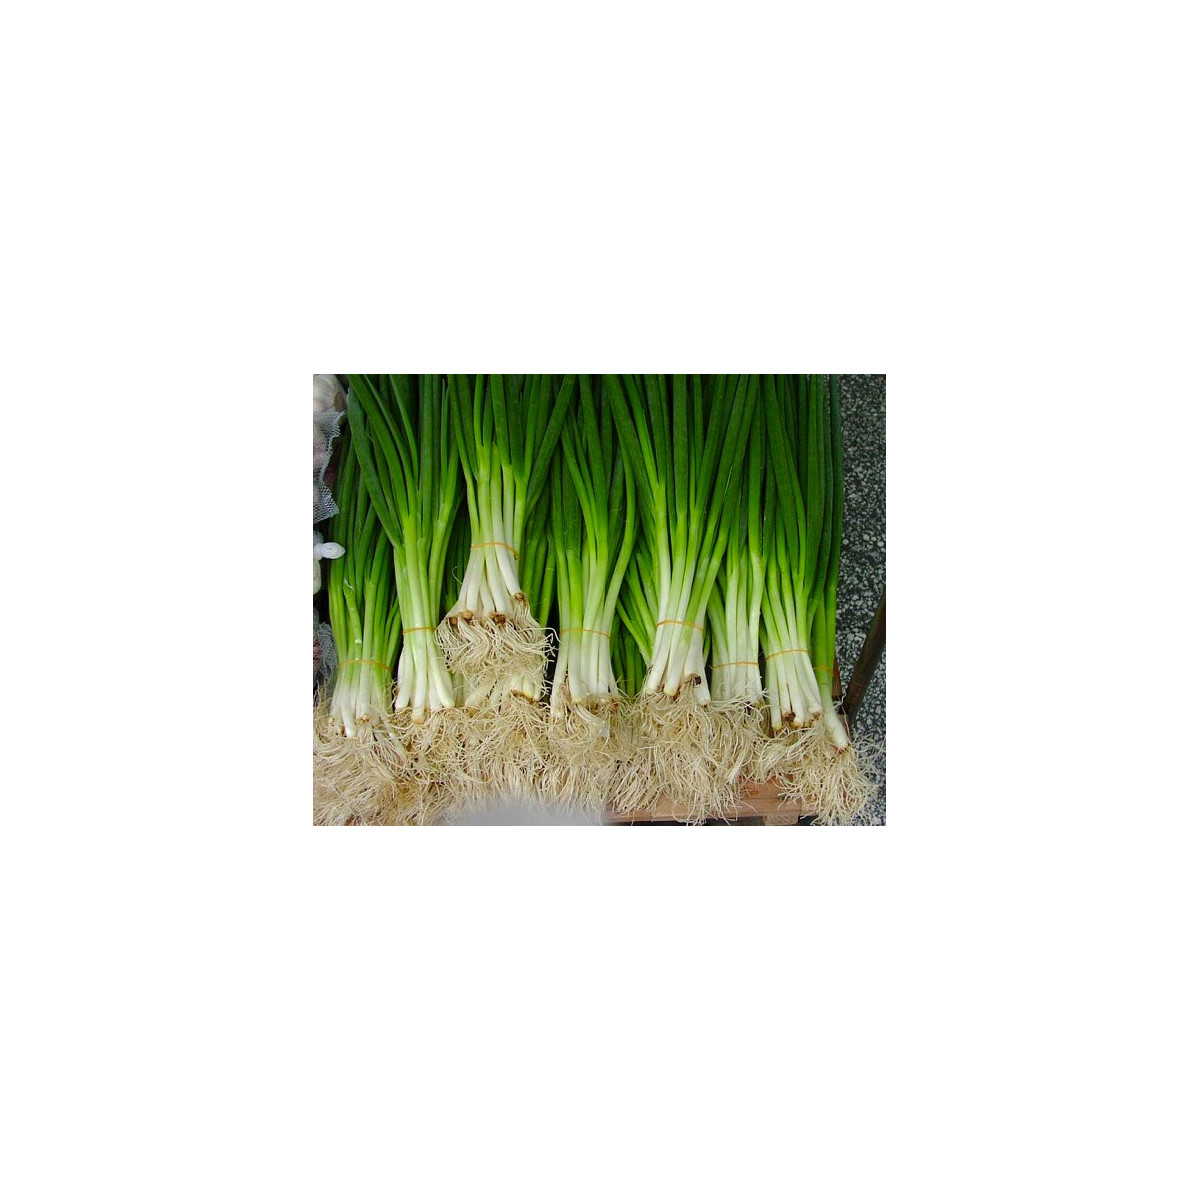 Semena cibule – Cibule sečka – Allium fistulosum L.